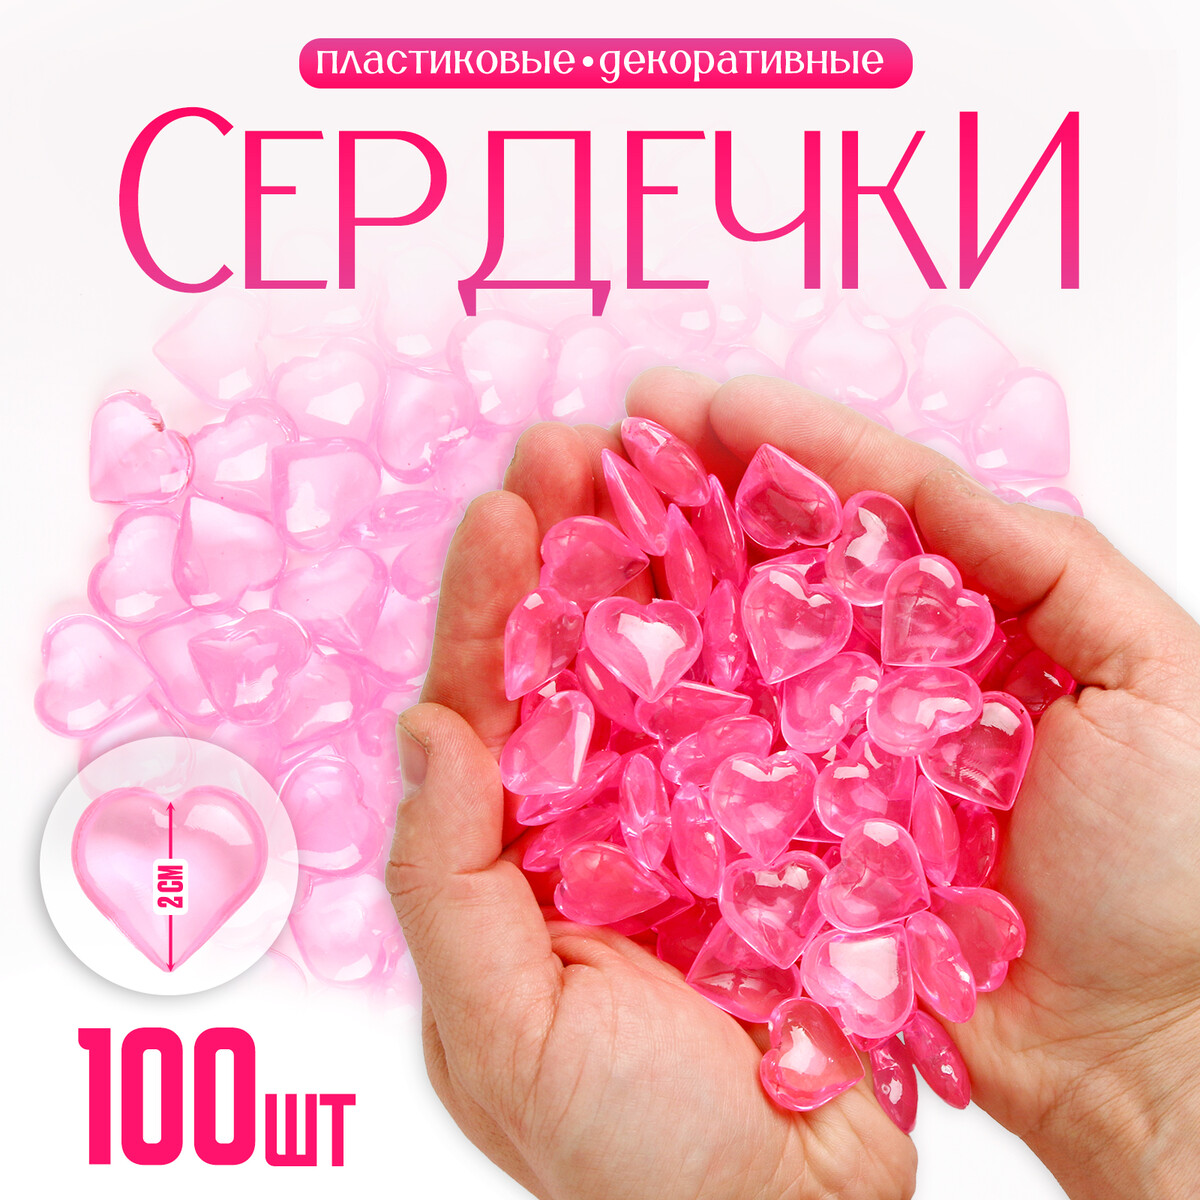 Сердечки пластиковые декоративные, набор 100 шт., размер 1 шт. — 2 × 2 см, цвет розовый сердечки декоративные из лозы красные 2шт